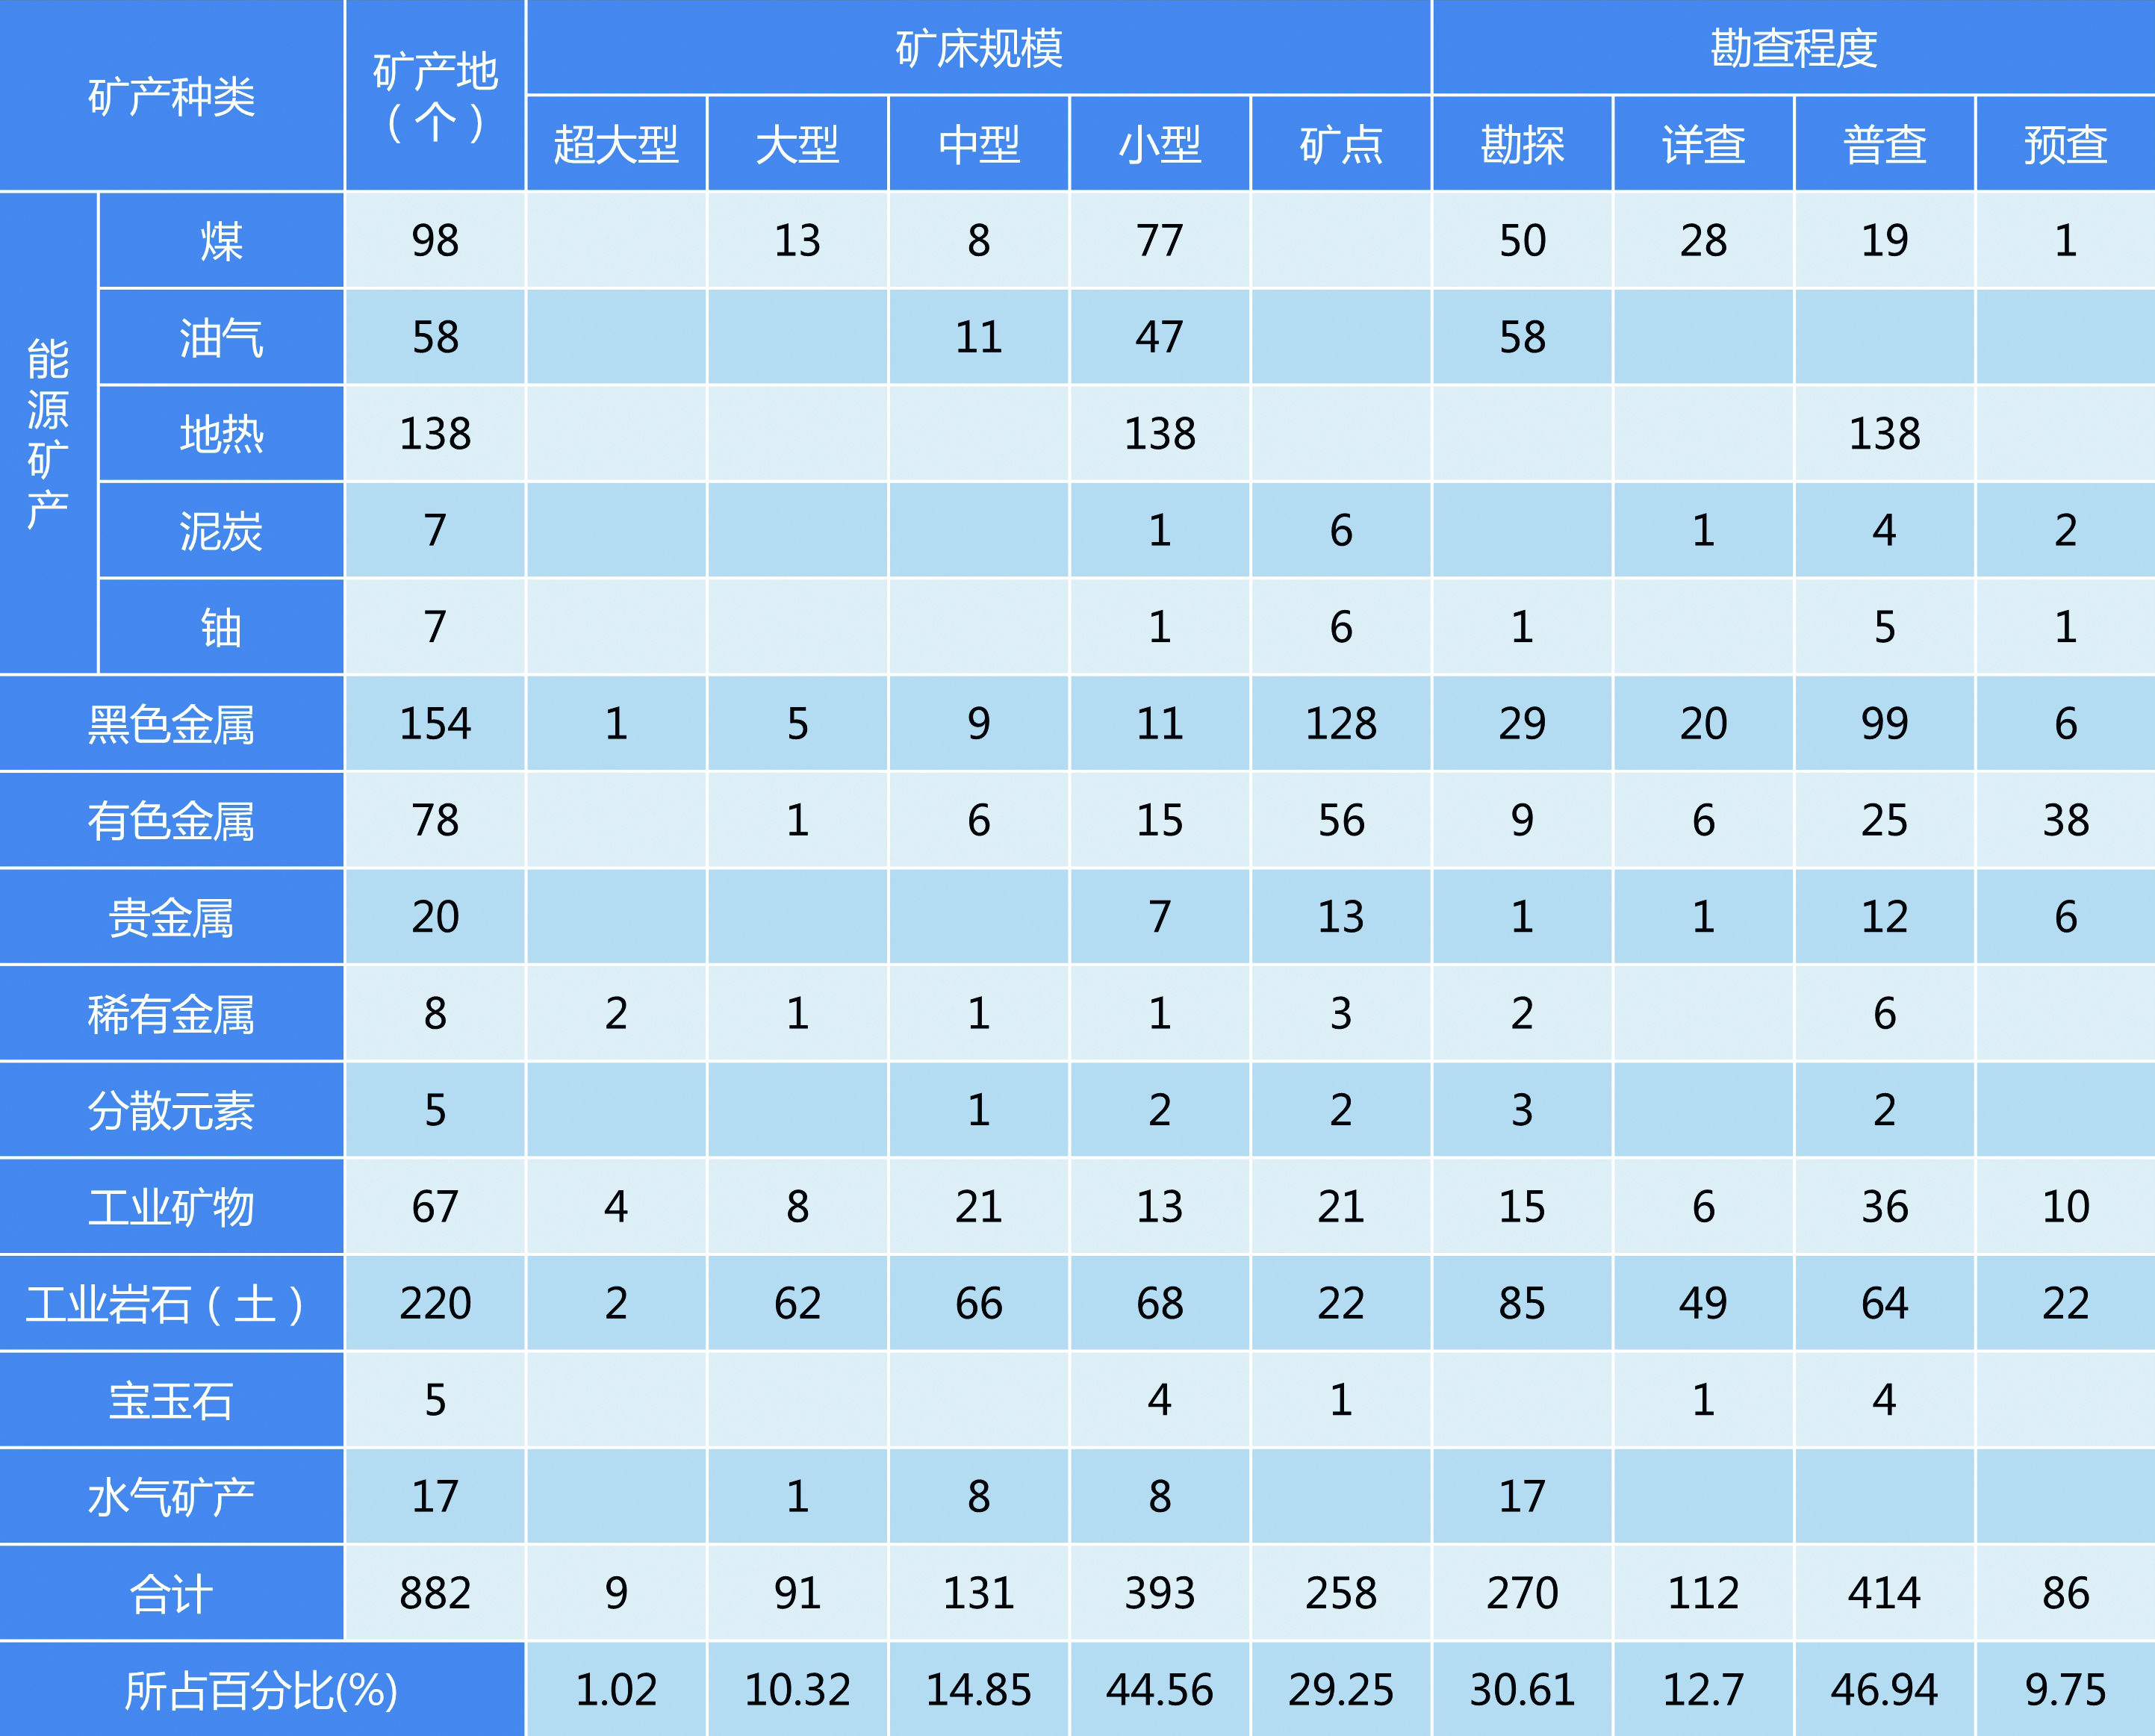 3.江苏省矿产地规模和勘查程度统计表.jpg